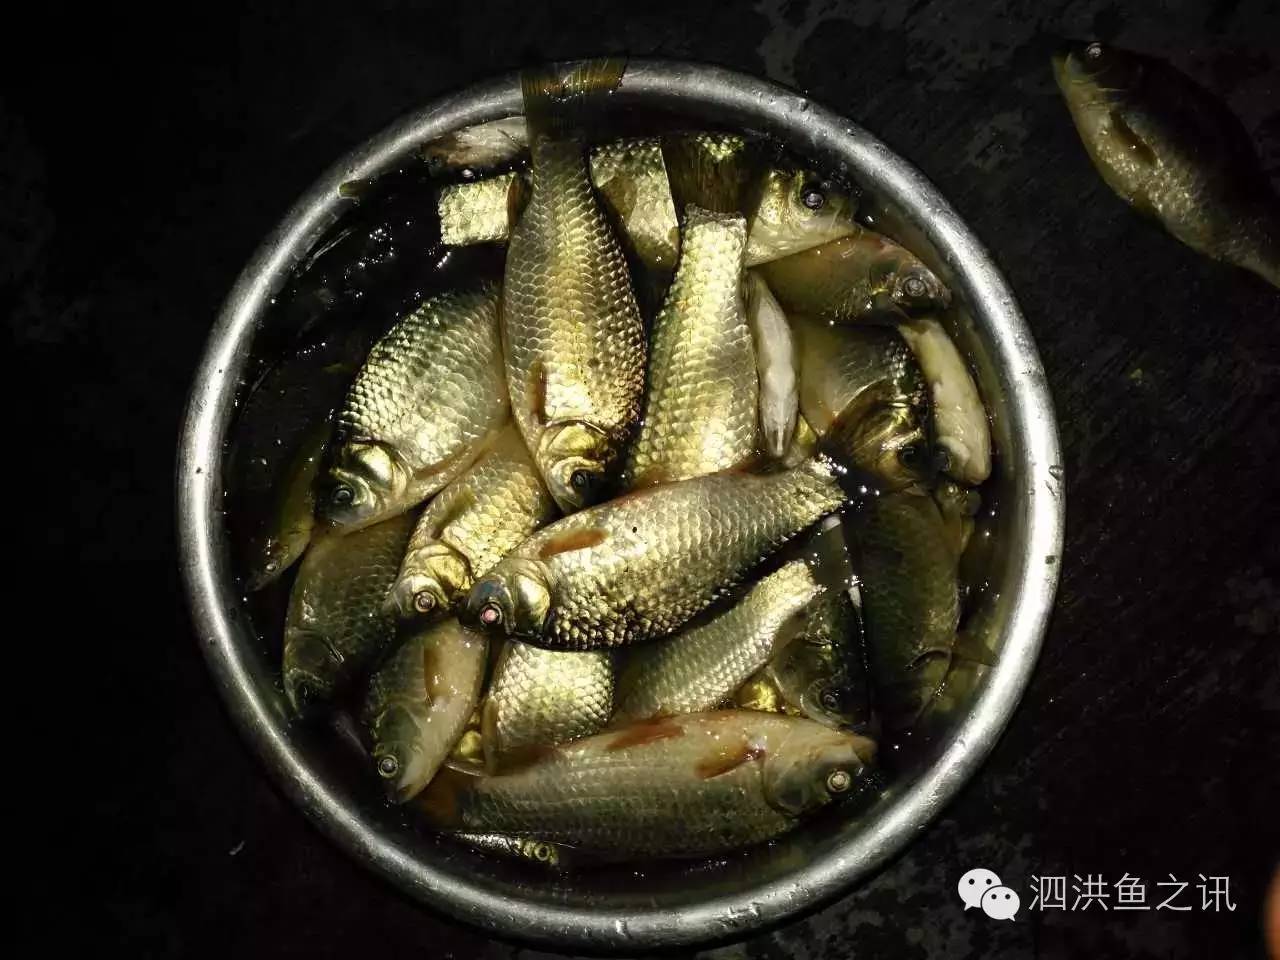 20160603 泗洪·鱼之讯 - 周未前的鱼情参考